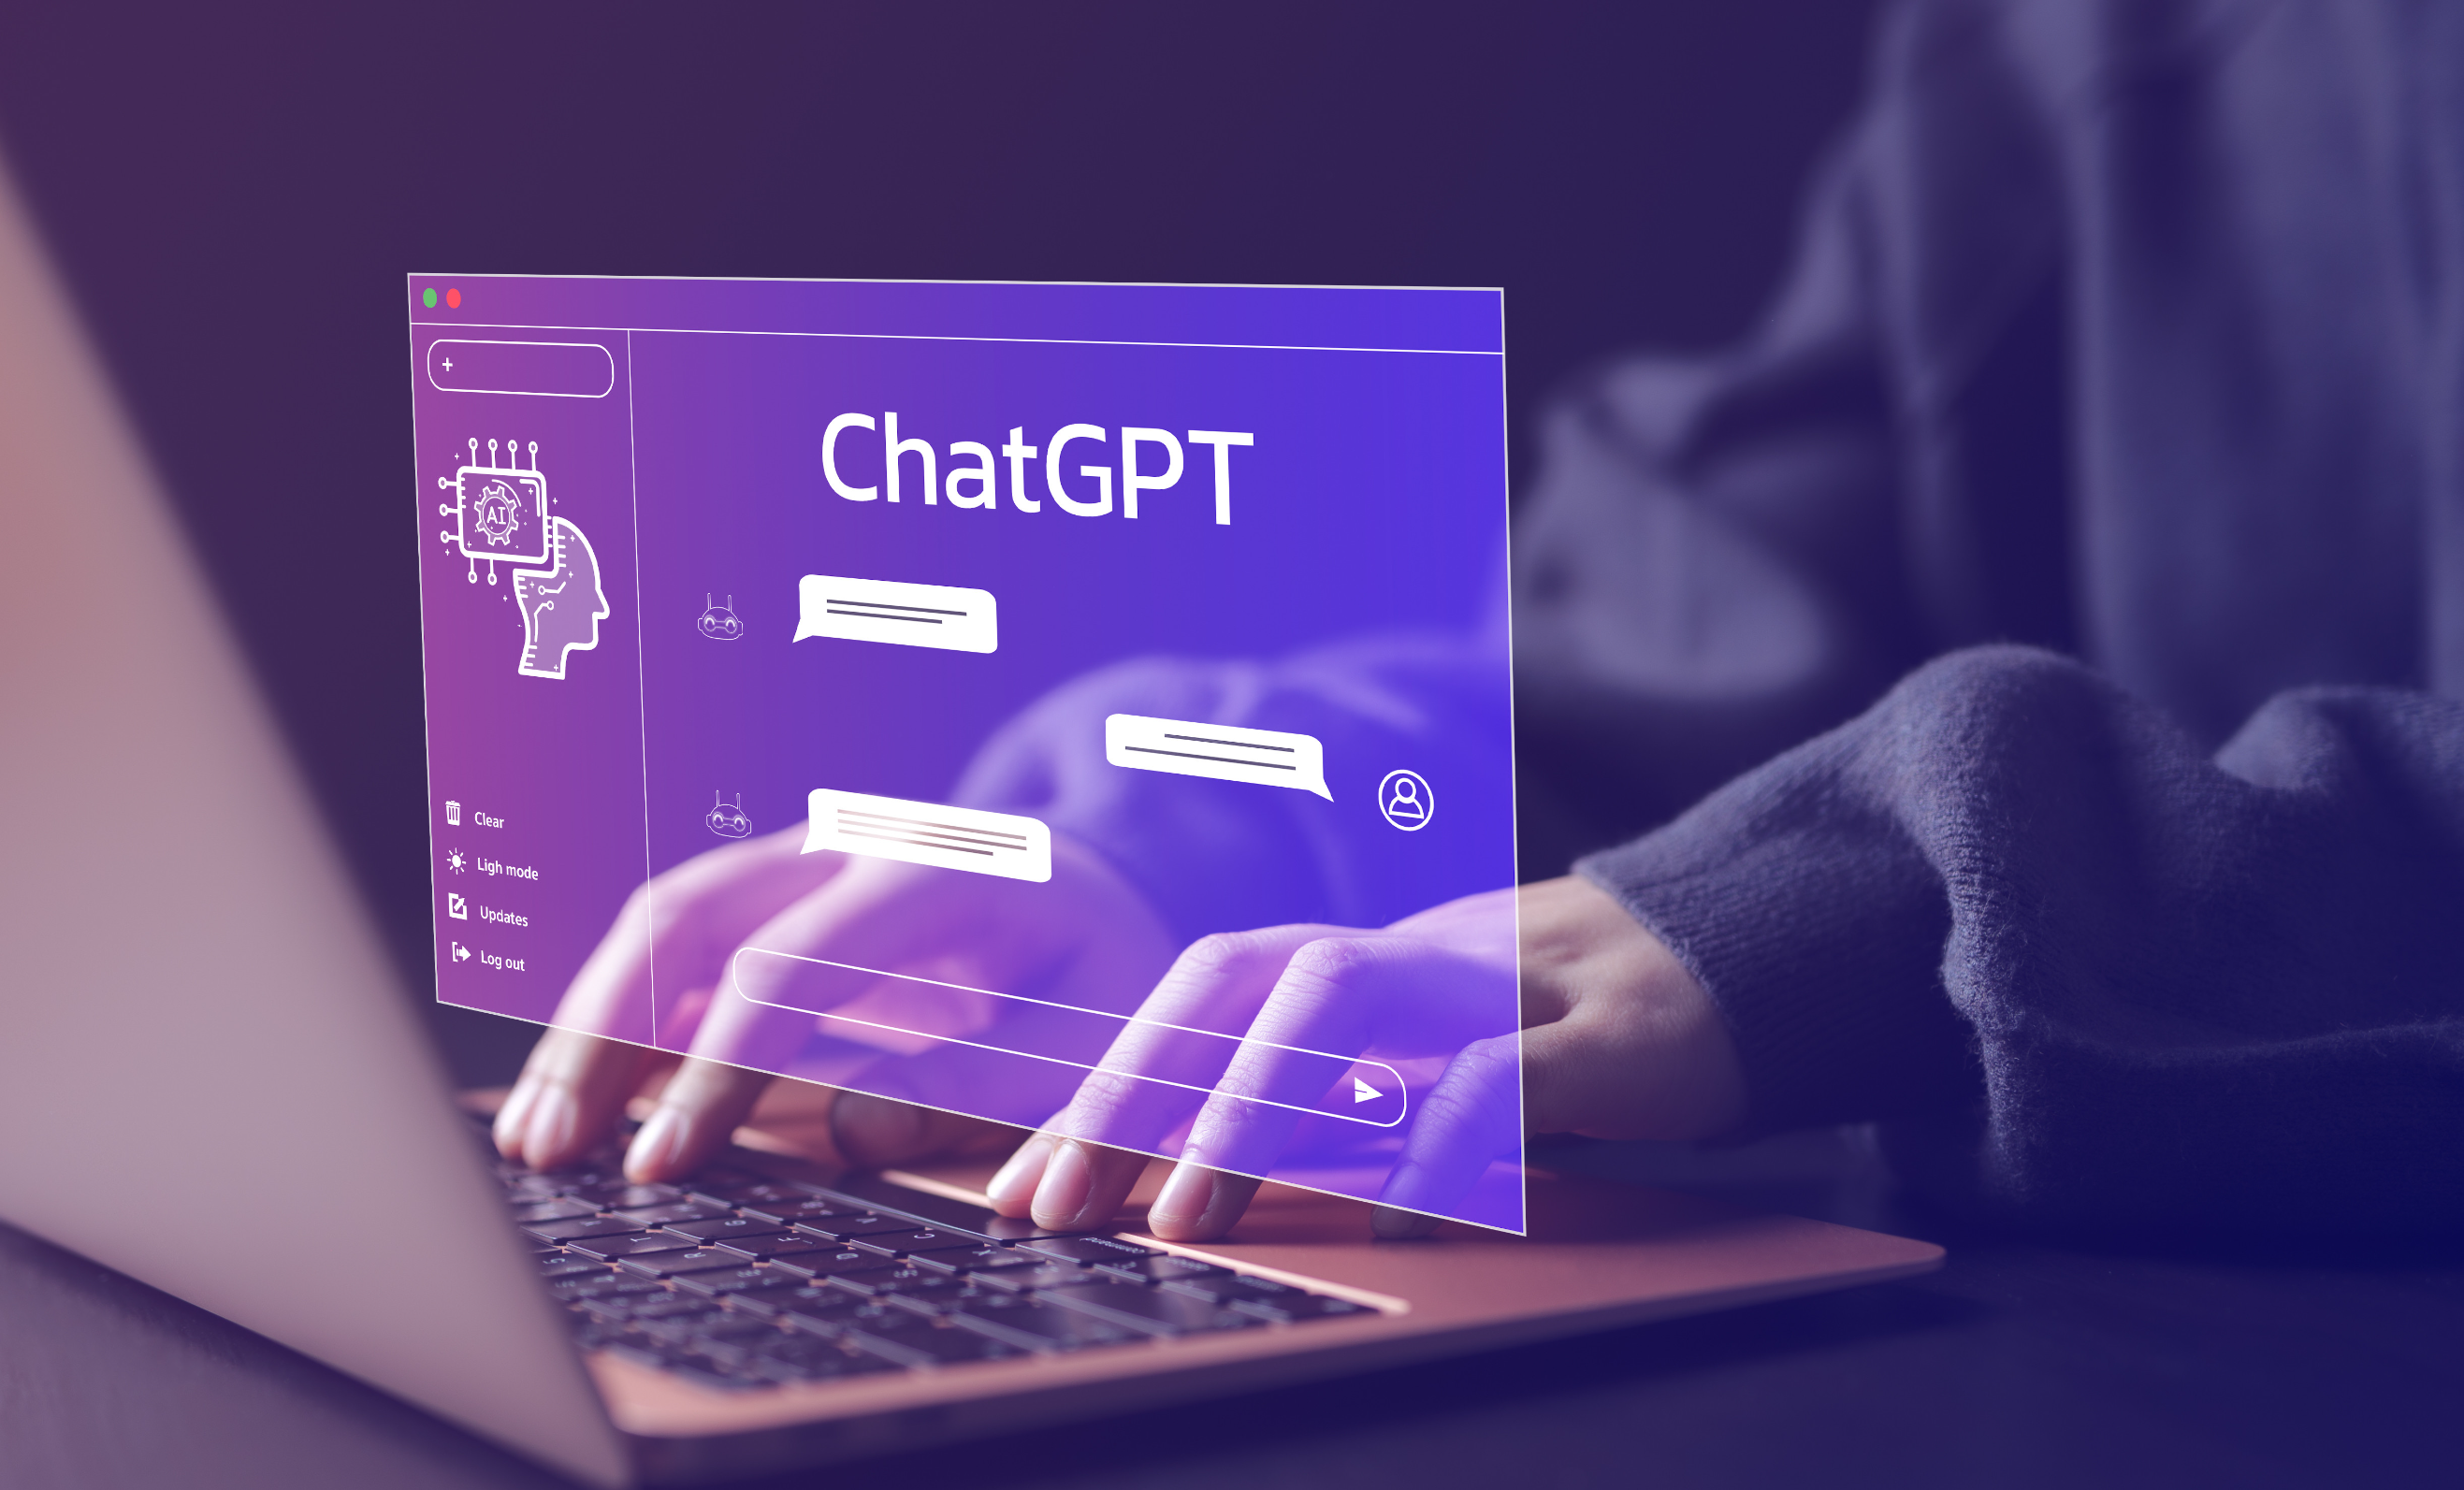 Внедрение компанией Samsung технологии ChatGPT обернулось утечкой конфиденциальных данных